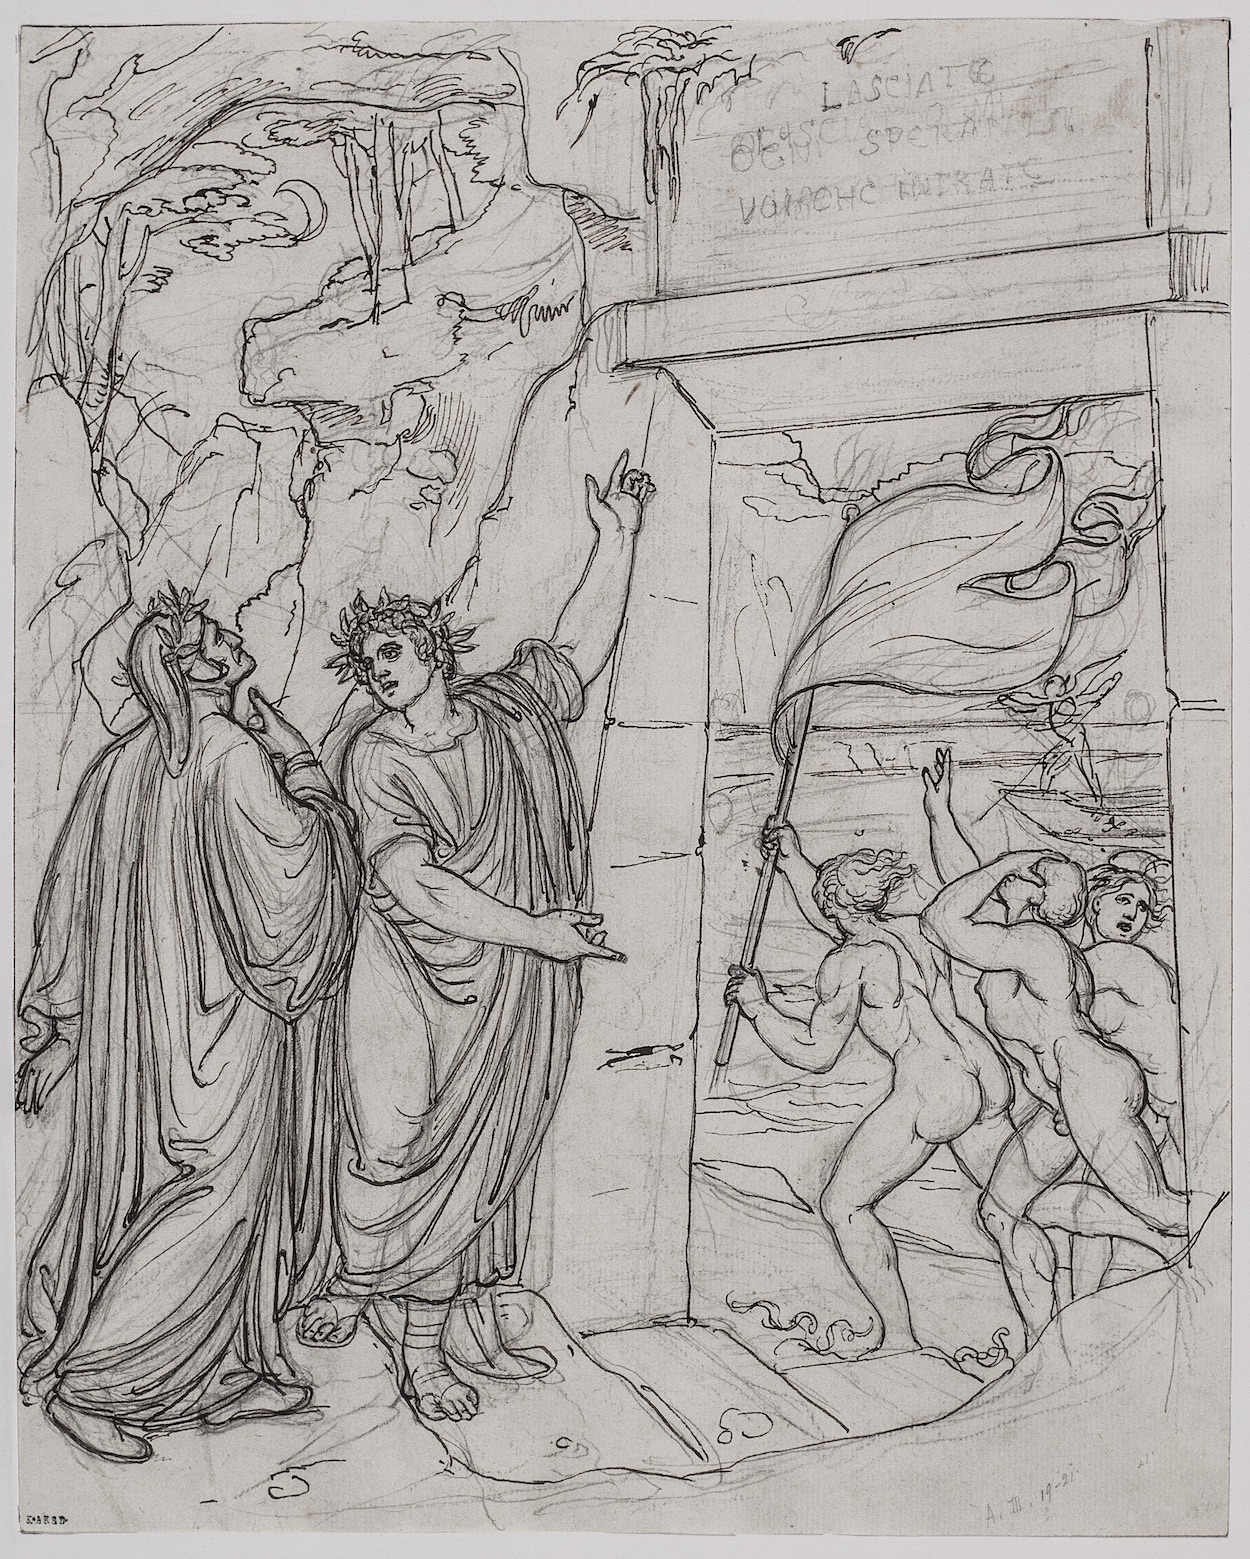 الدخول من بوابة الجحيم, دانتي: الكوميديا الالهية, انفيرنو, كانتو III by Joseph Anton Koch - حوالي 1803 